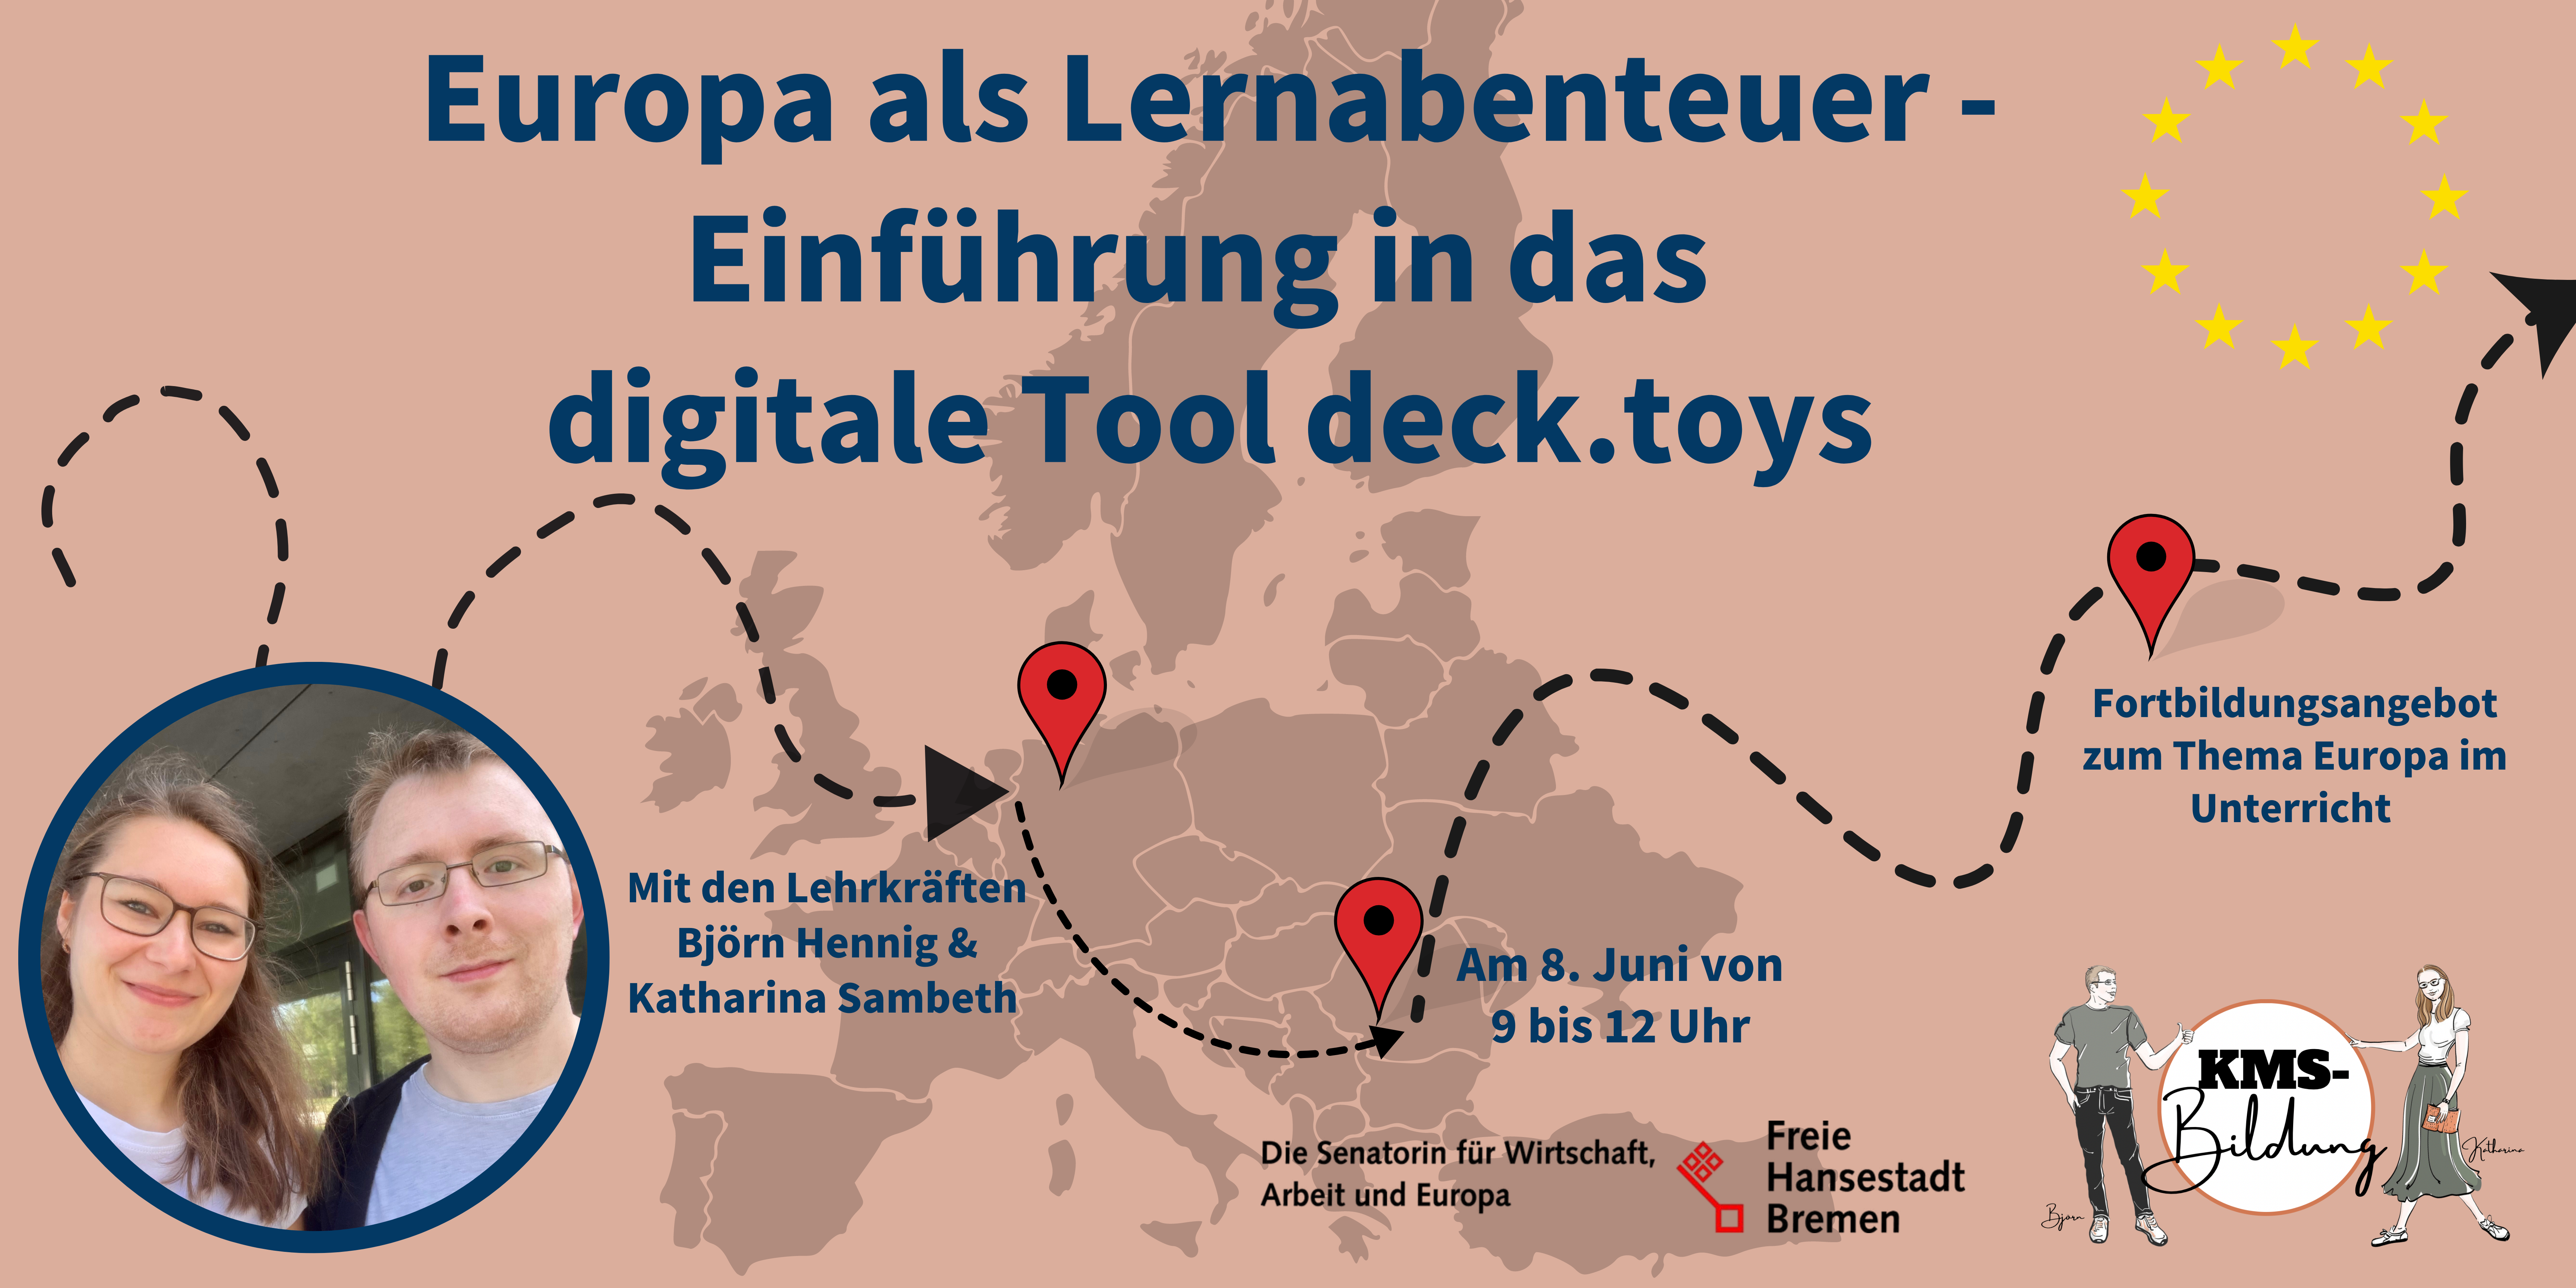 Europa als Lernabenteuer - Einführung in das digital Tool deck.toys